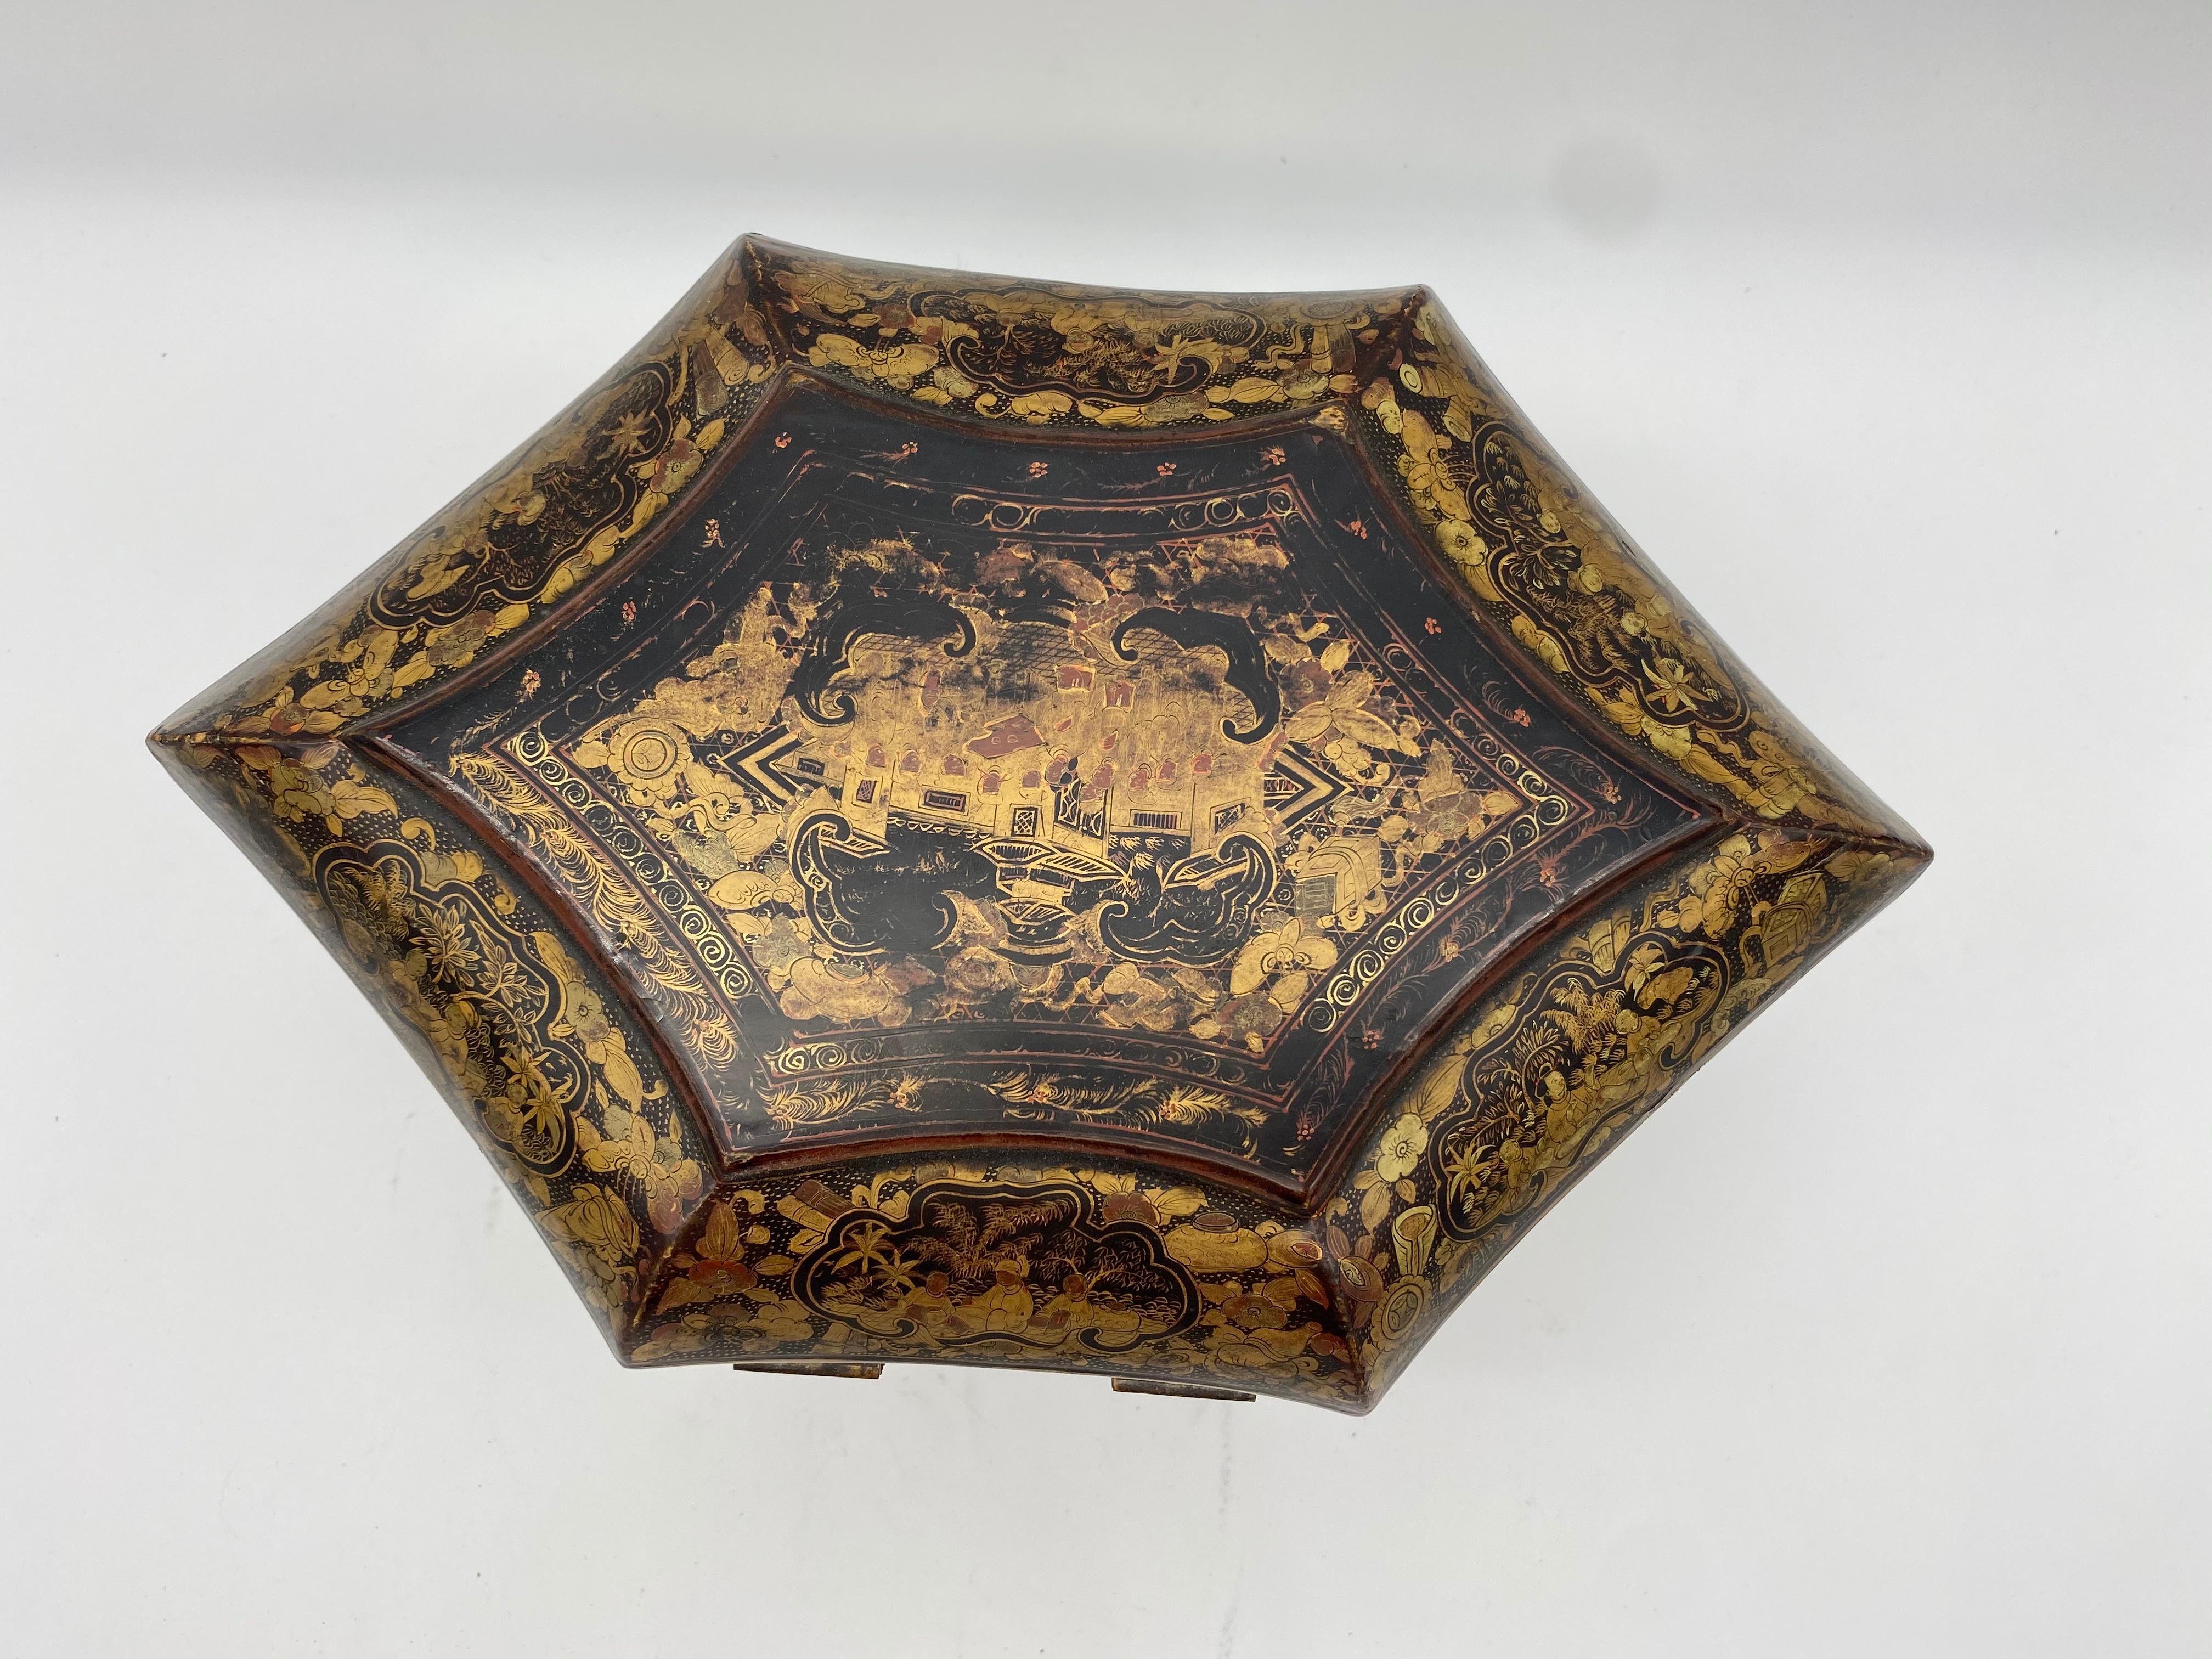 Chinesische Goldlack-Teekanne aus der Qing-Dynastie, 19. Jahrhundert. Einzigartige Form, schwer zu finden.